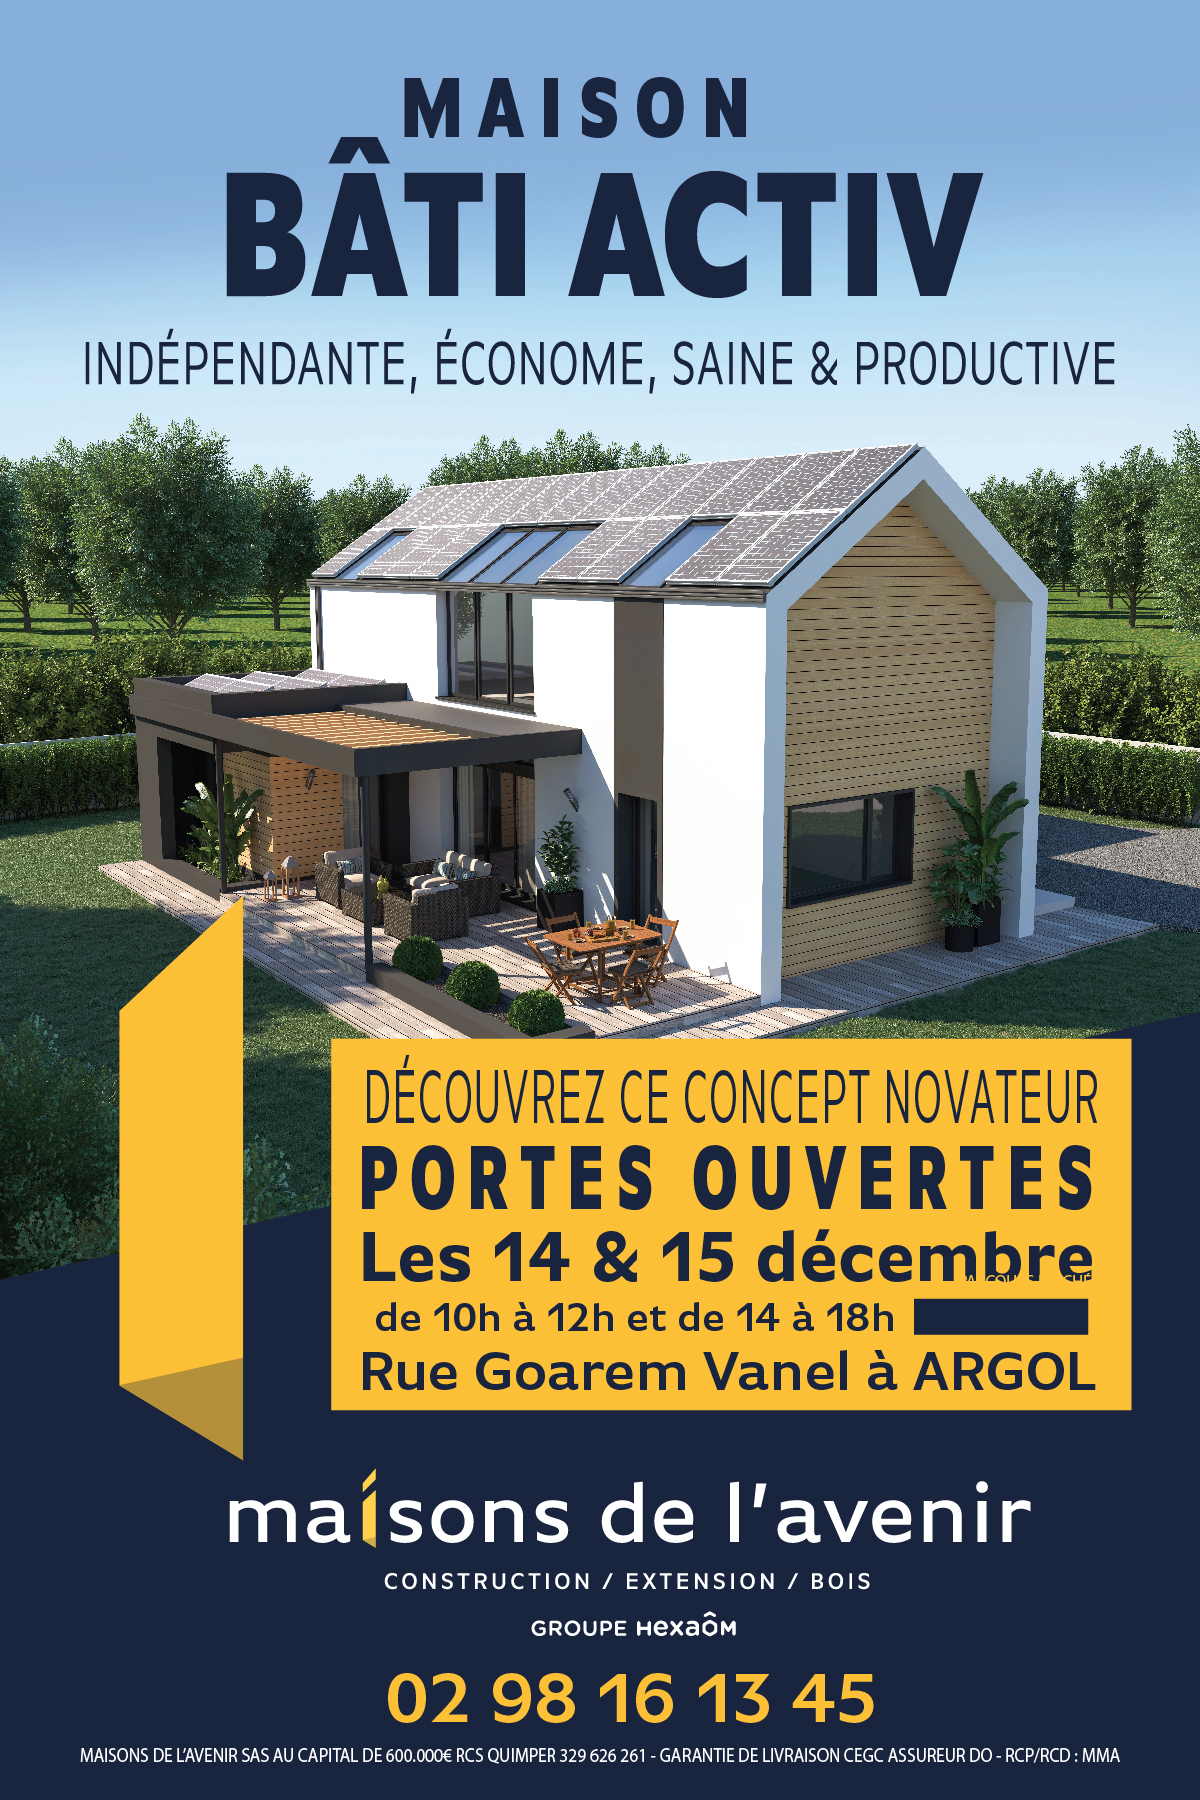 maisons-avenir-constructeur-maison-portes-ouvertes-traditionnelle-écologique-Bati-Activ-Argol-secondaire